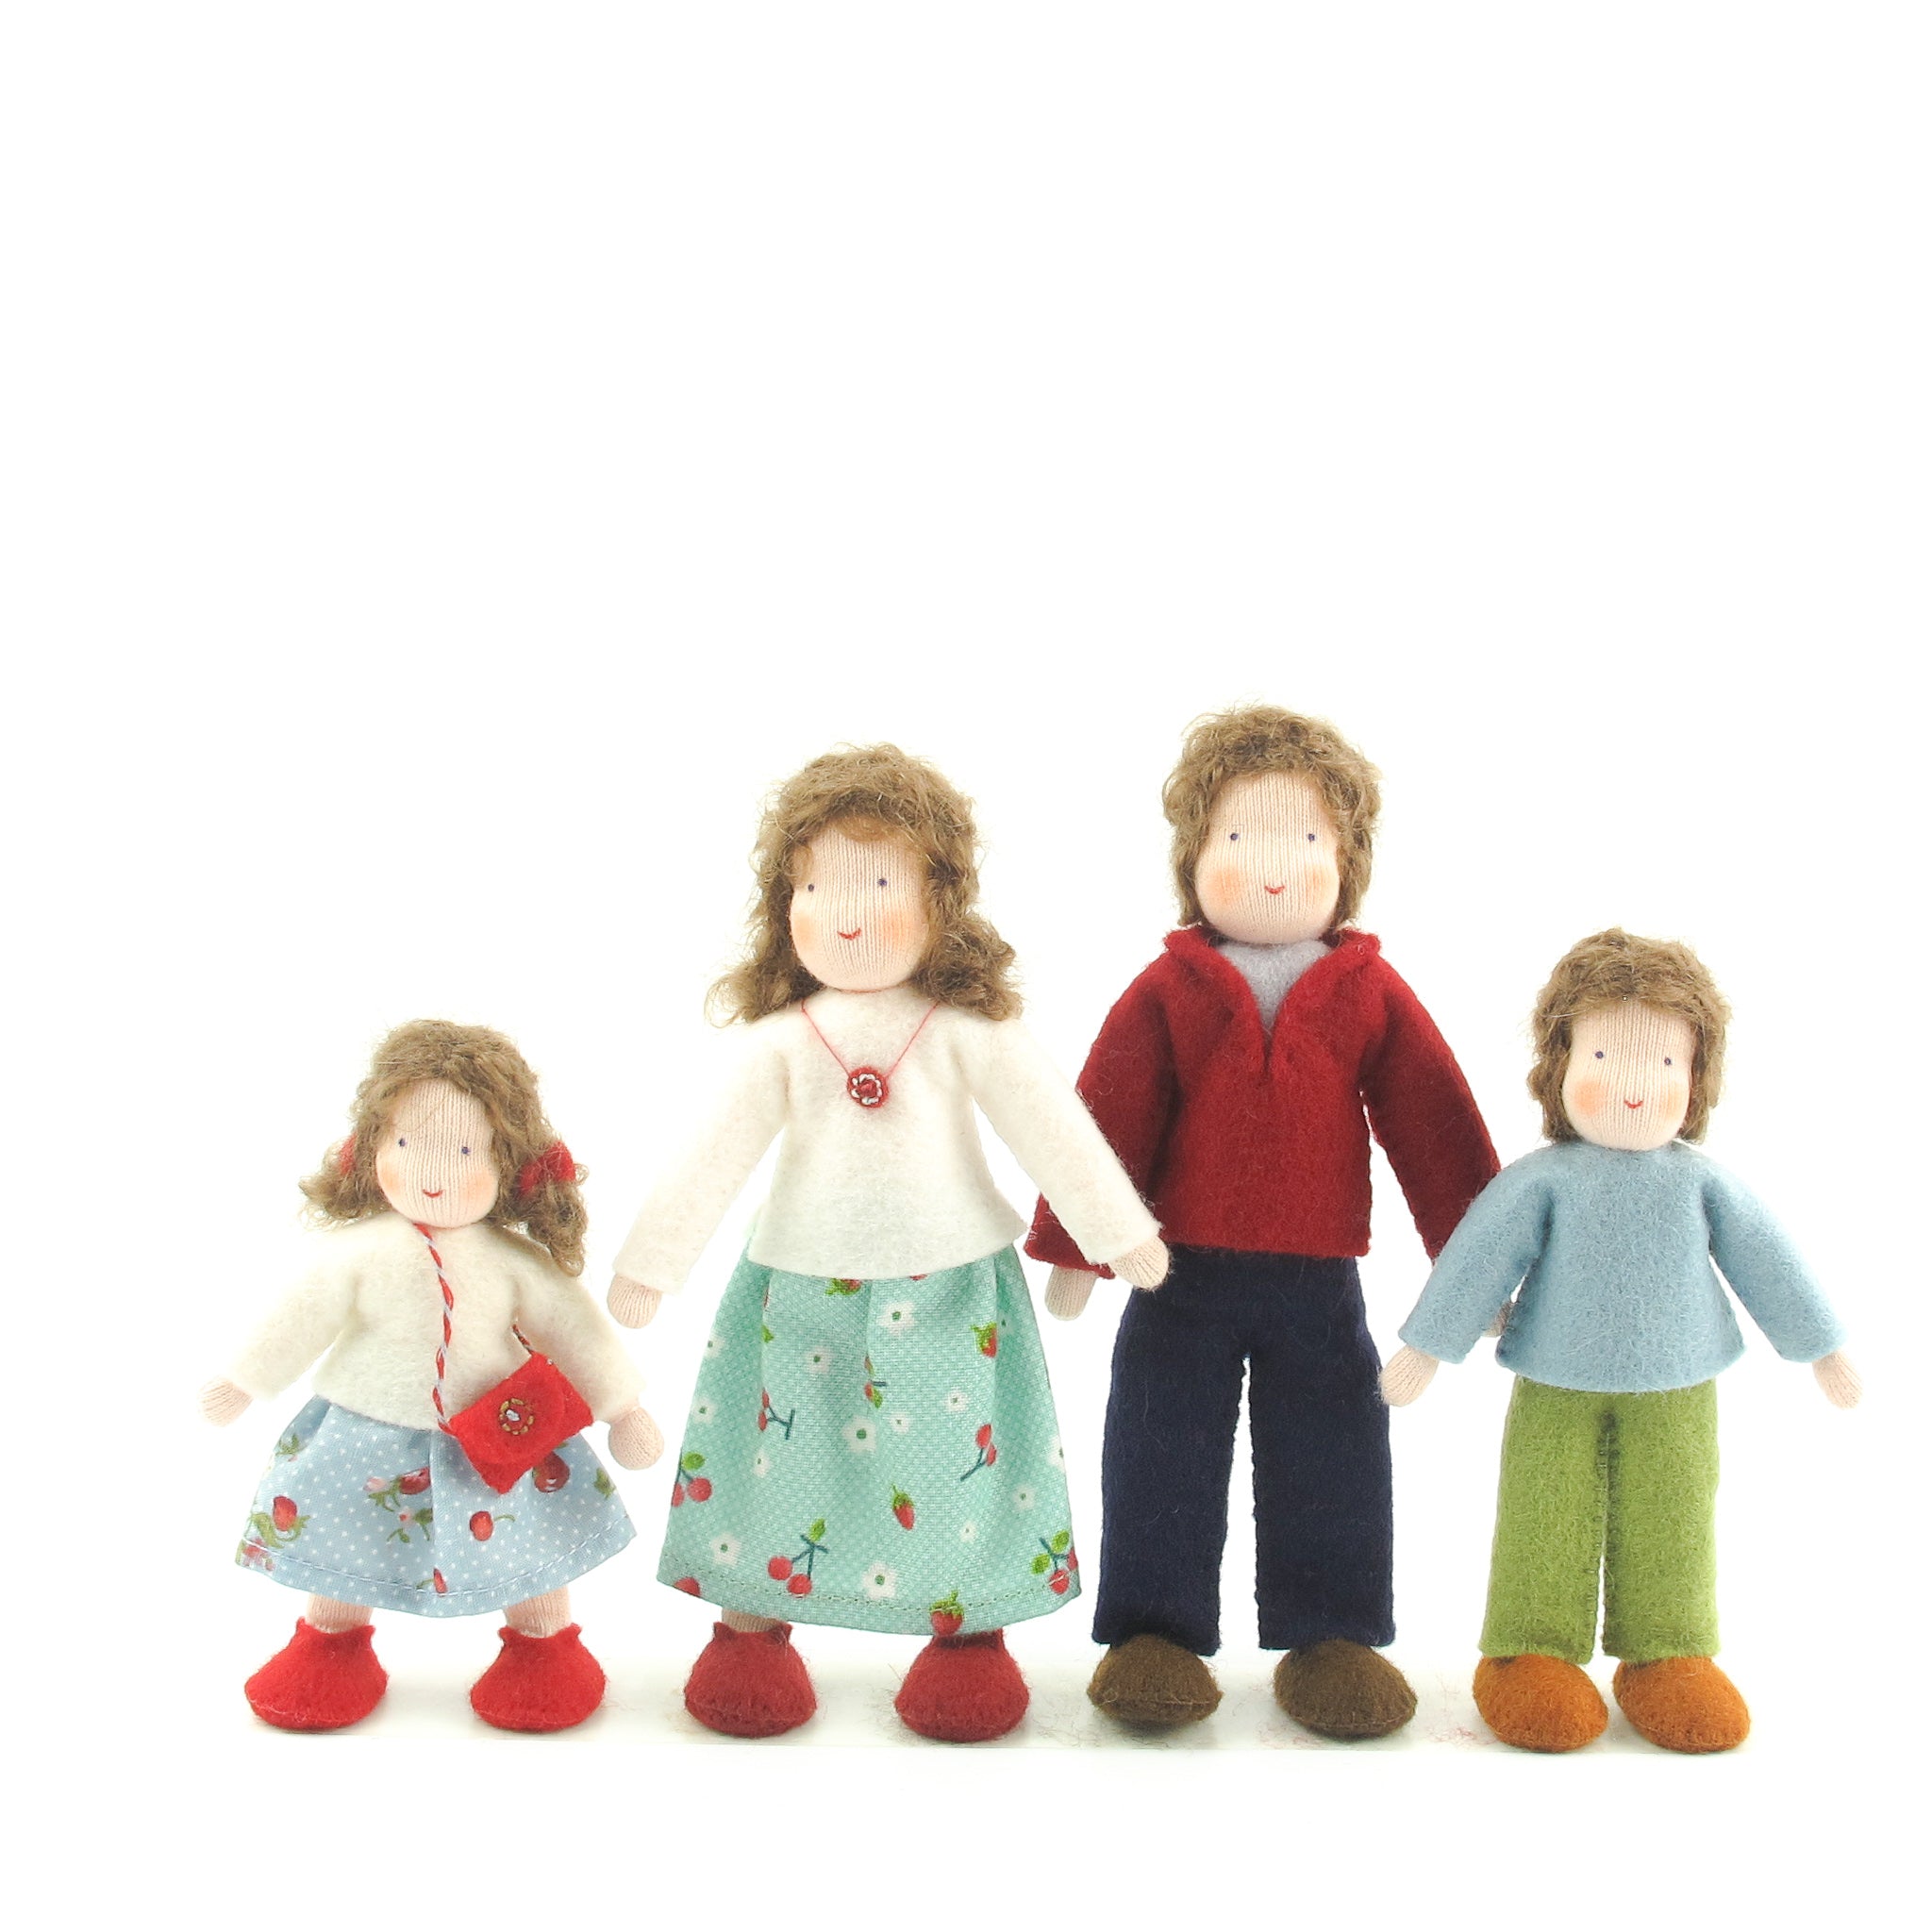 waldorf dollhouse dolls